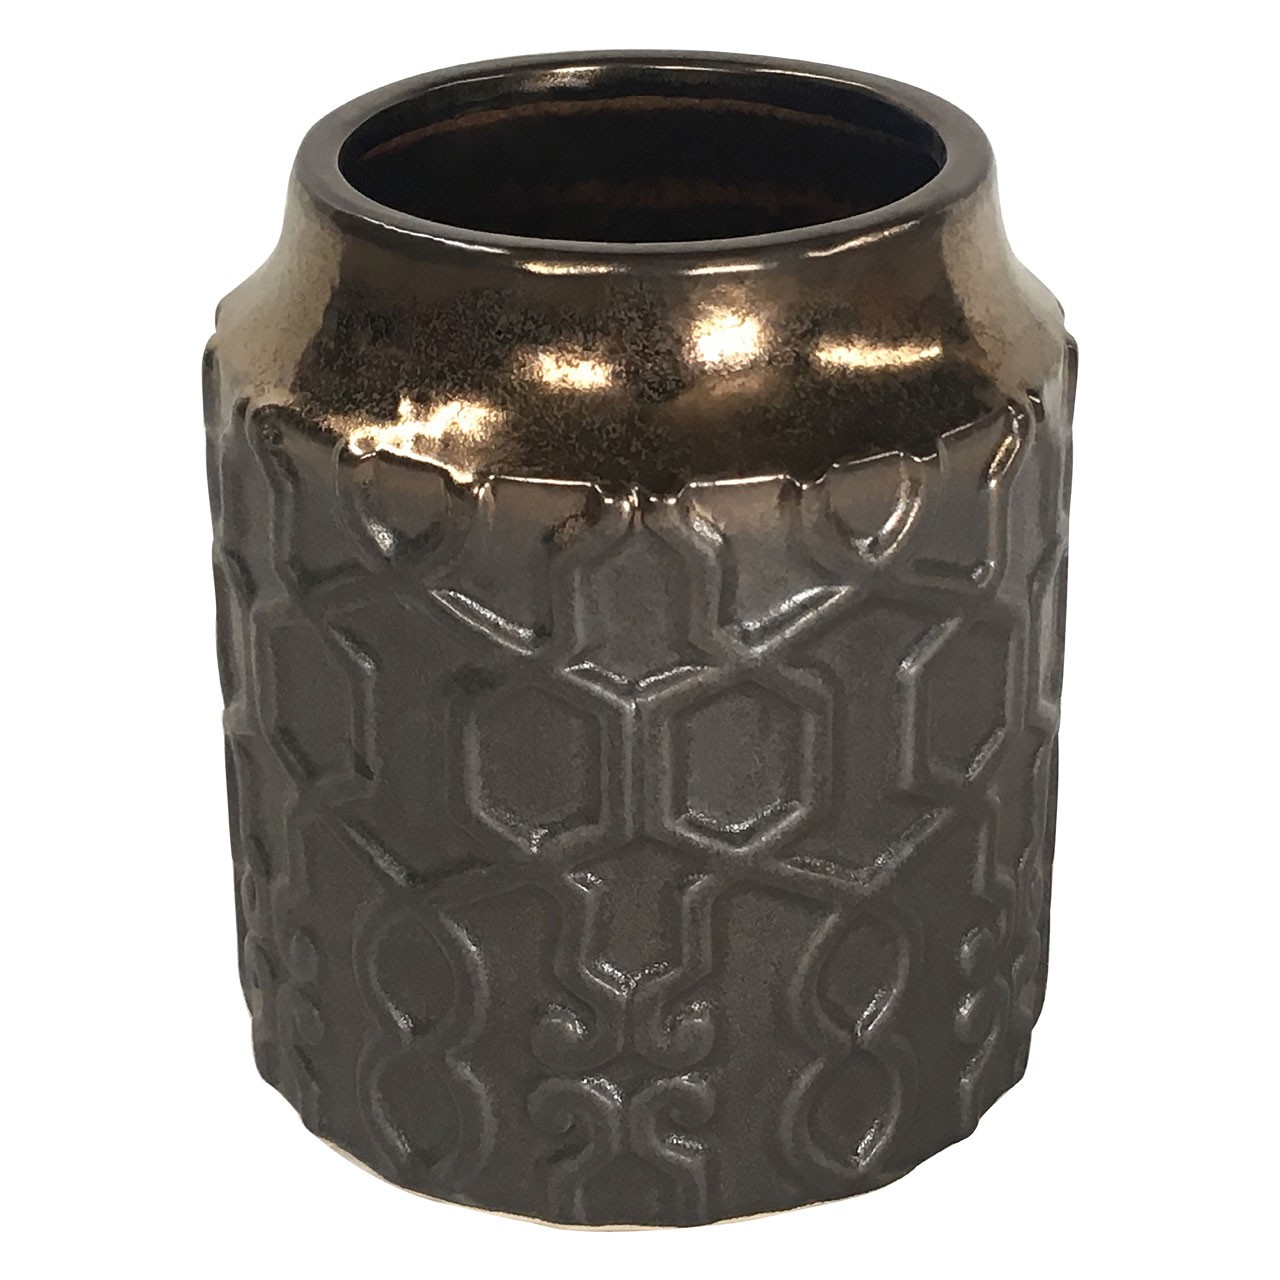 Zircon Ceramic Planter Gold-finish In Warm Tone - Click Image to Close